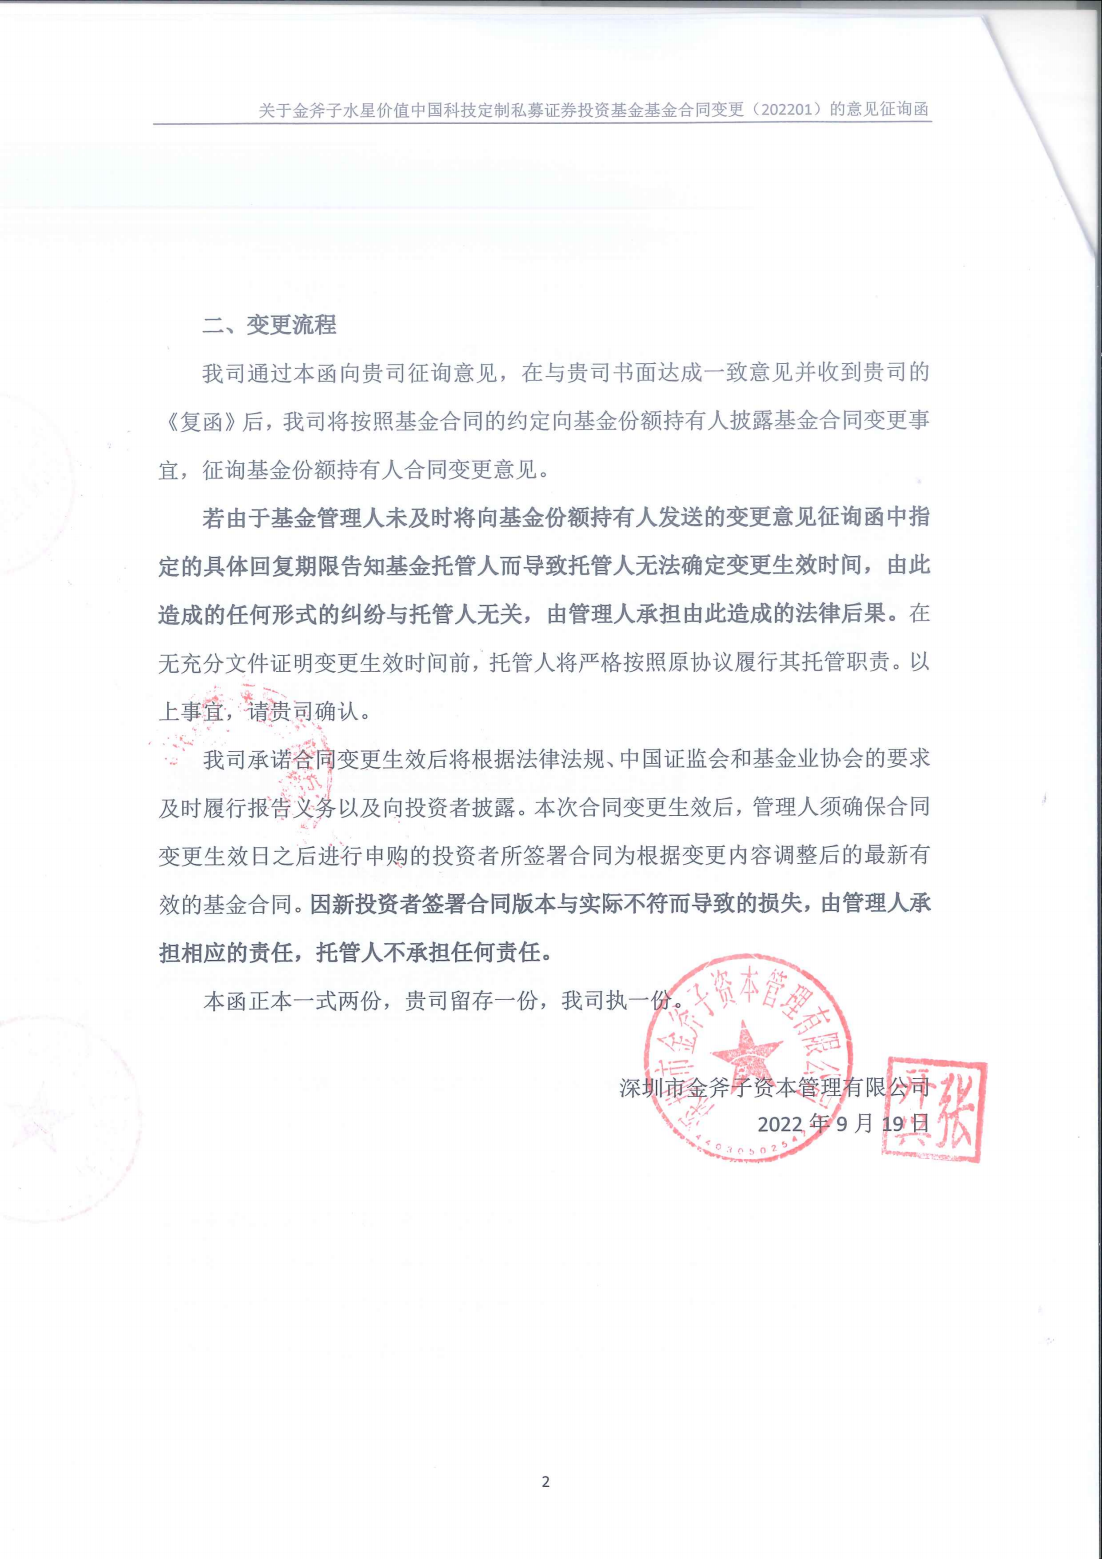 金斧子水星价值中国科技定制基金合同变更意见征询函_01.png